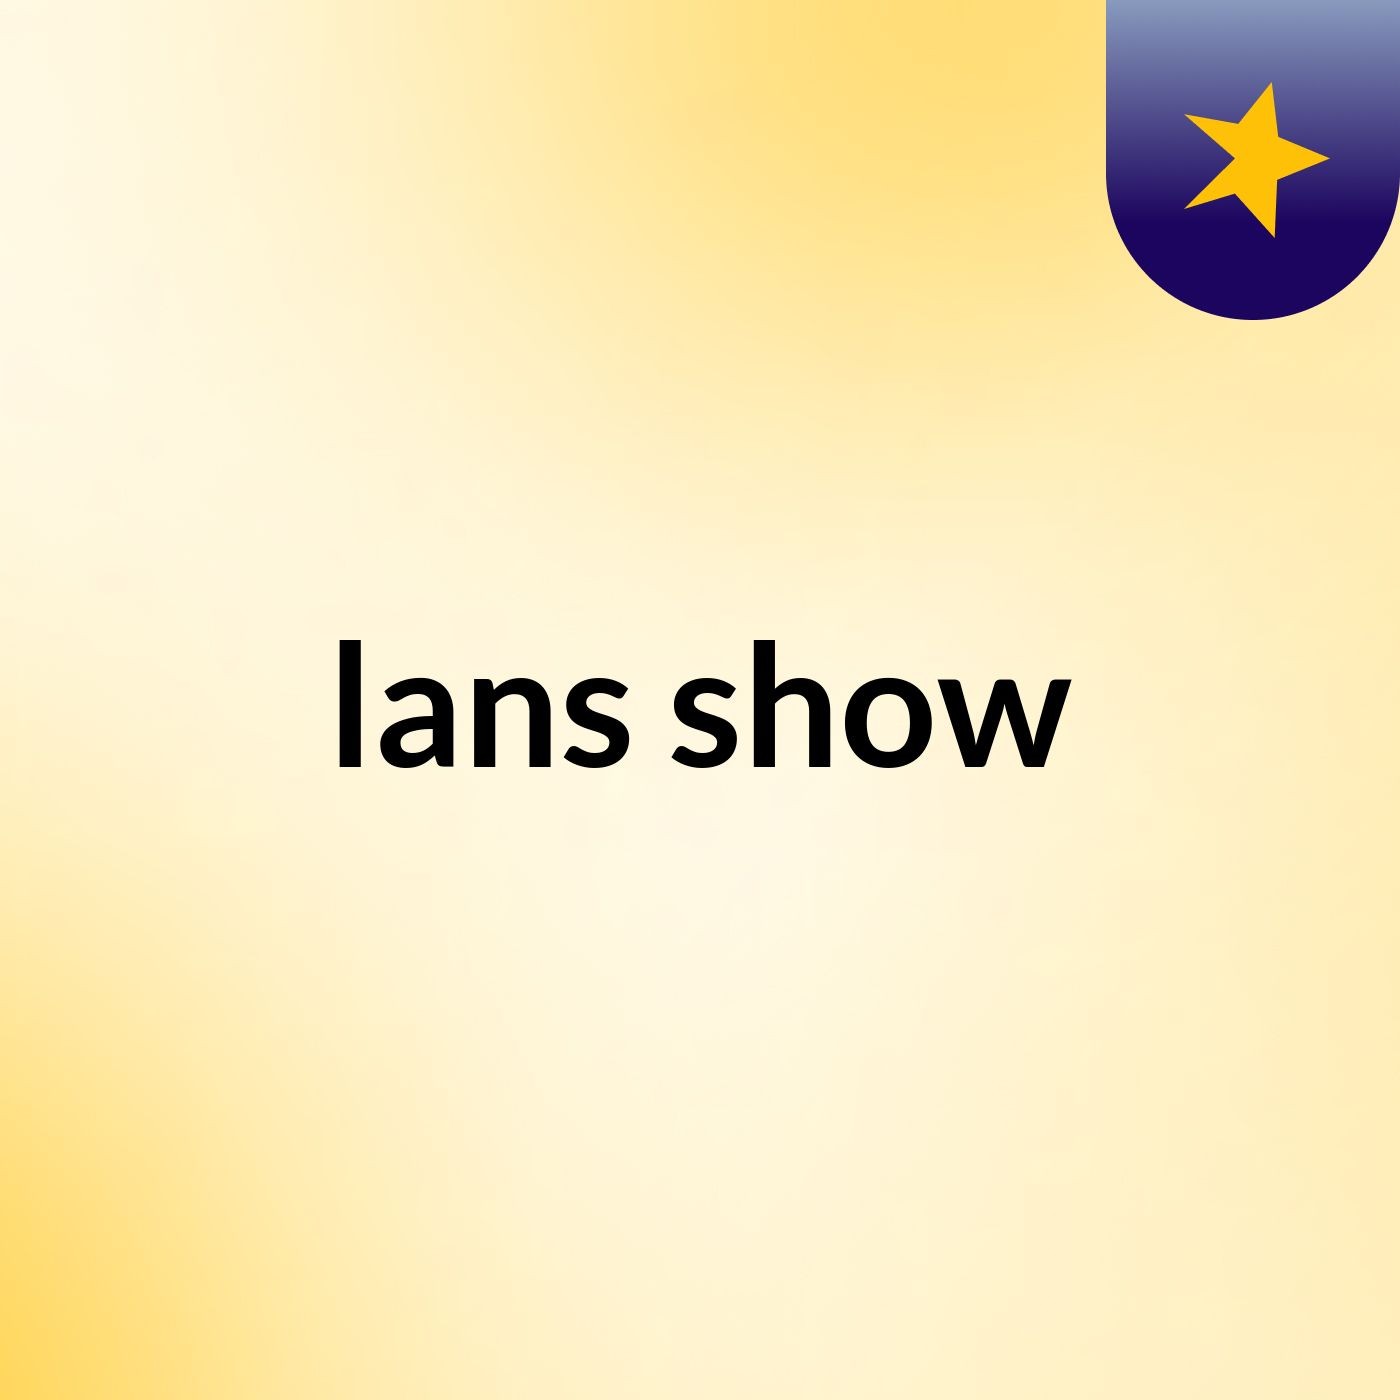 lans show